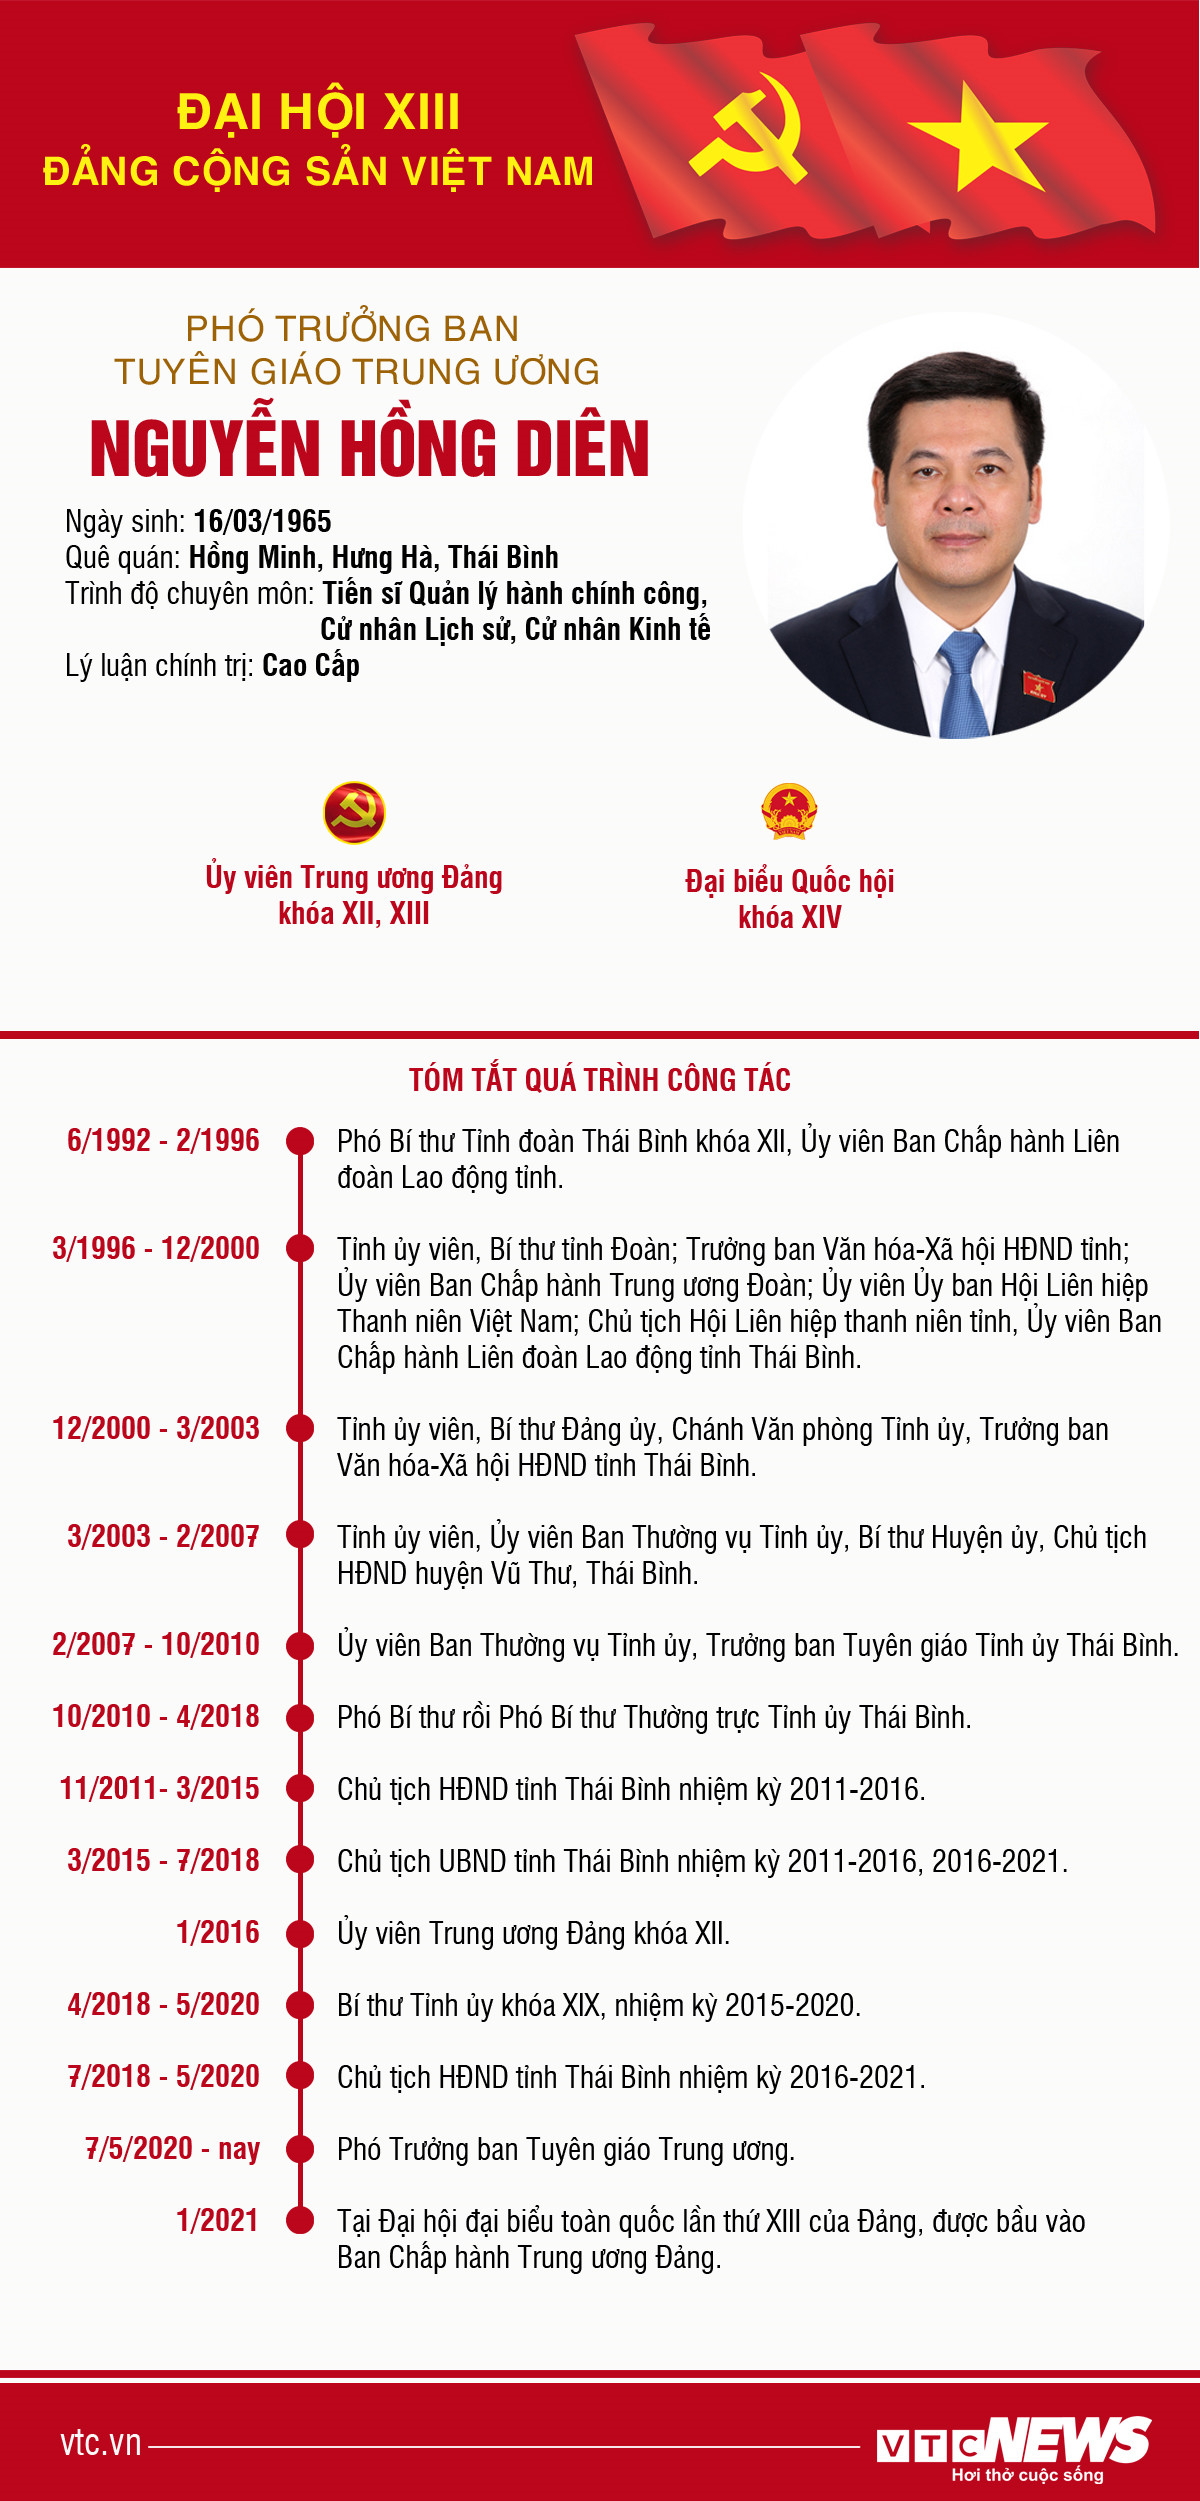 Infographic: Sự nghiệp Phó Trưởng Ban Tuyên giáo Trung ương Nguyễn Hồng Diên - 1